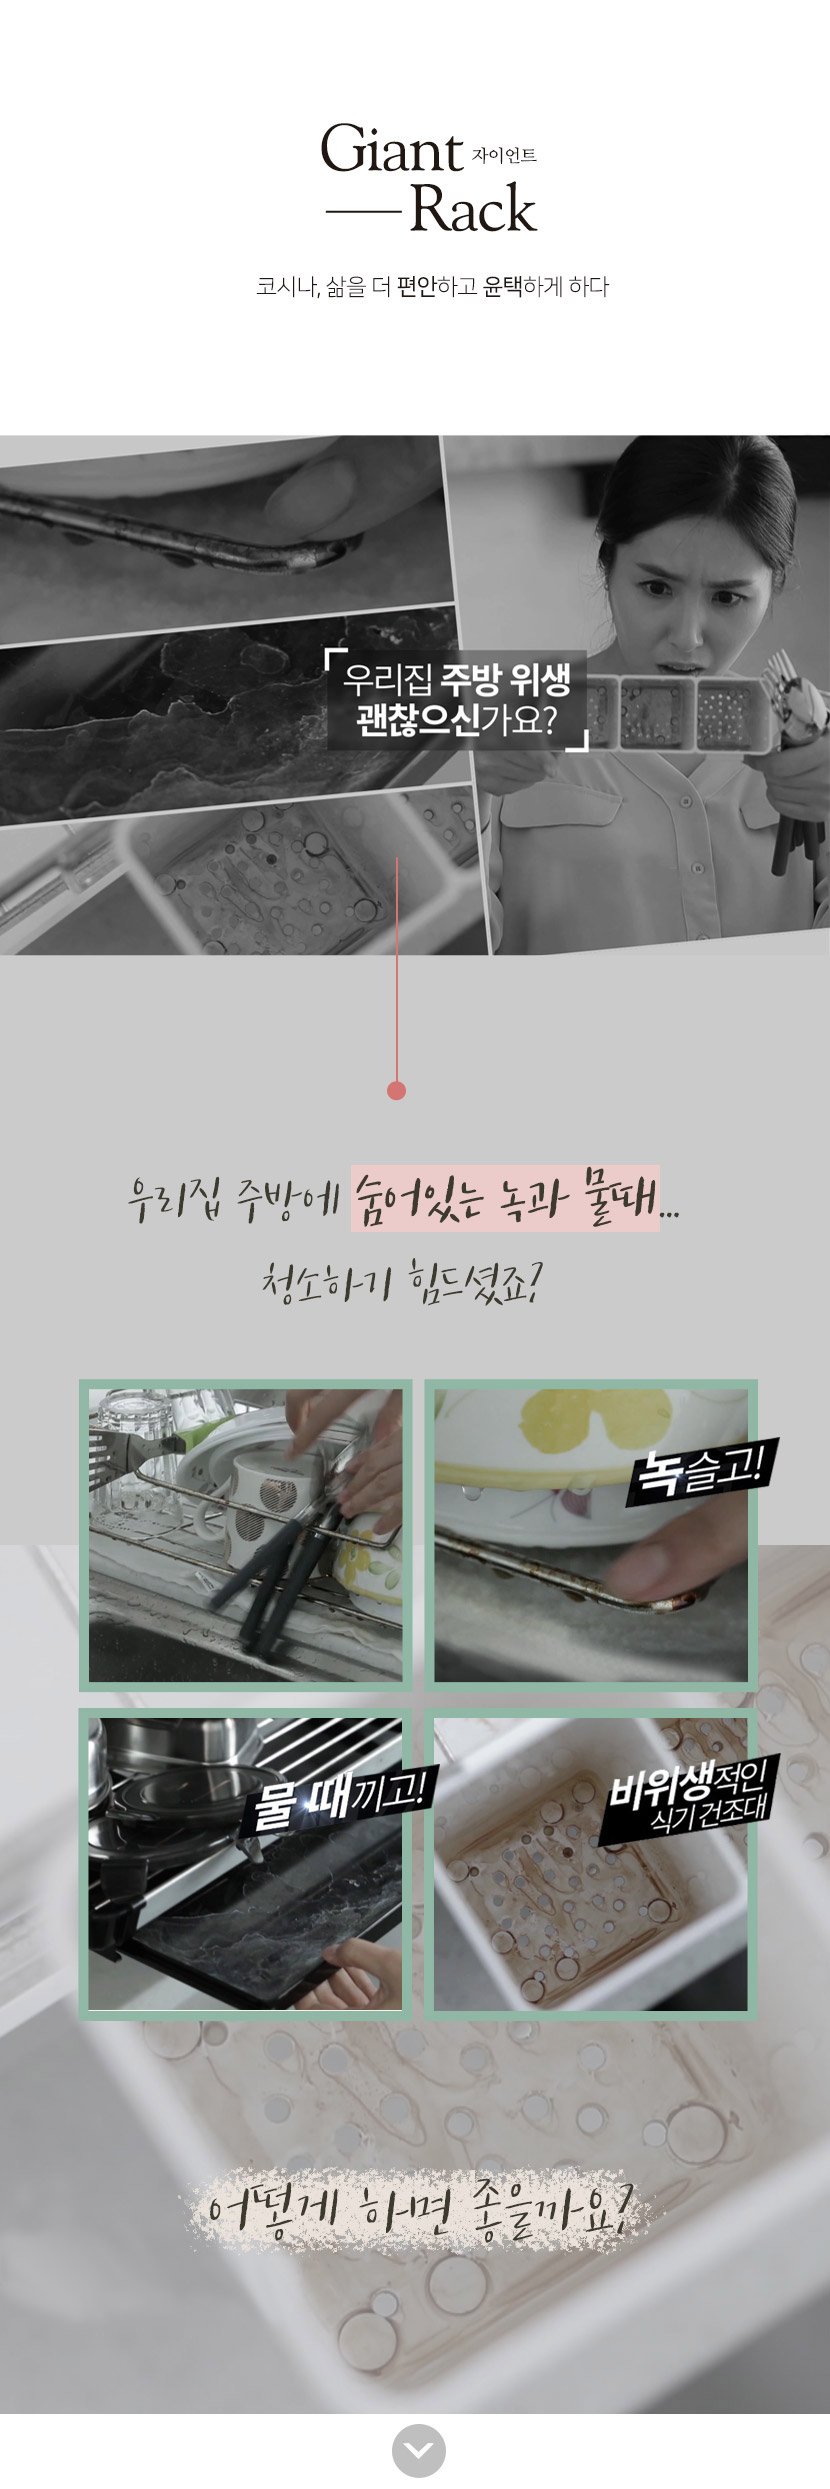 韓國食品-[코시나] 자이언트 특대형 올스텐 식기건조대 2단 풀세트